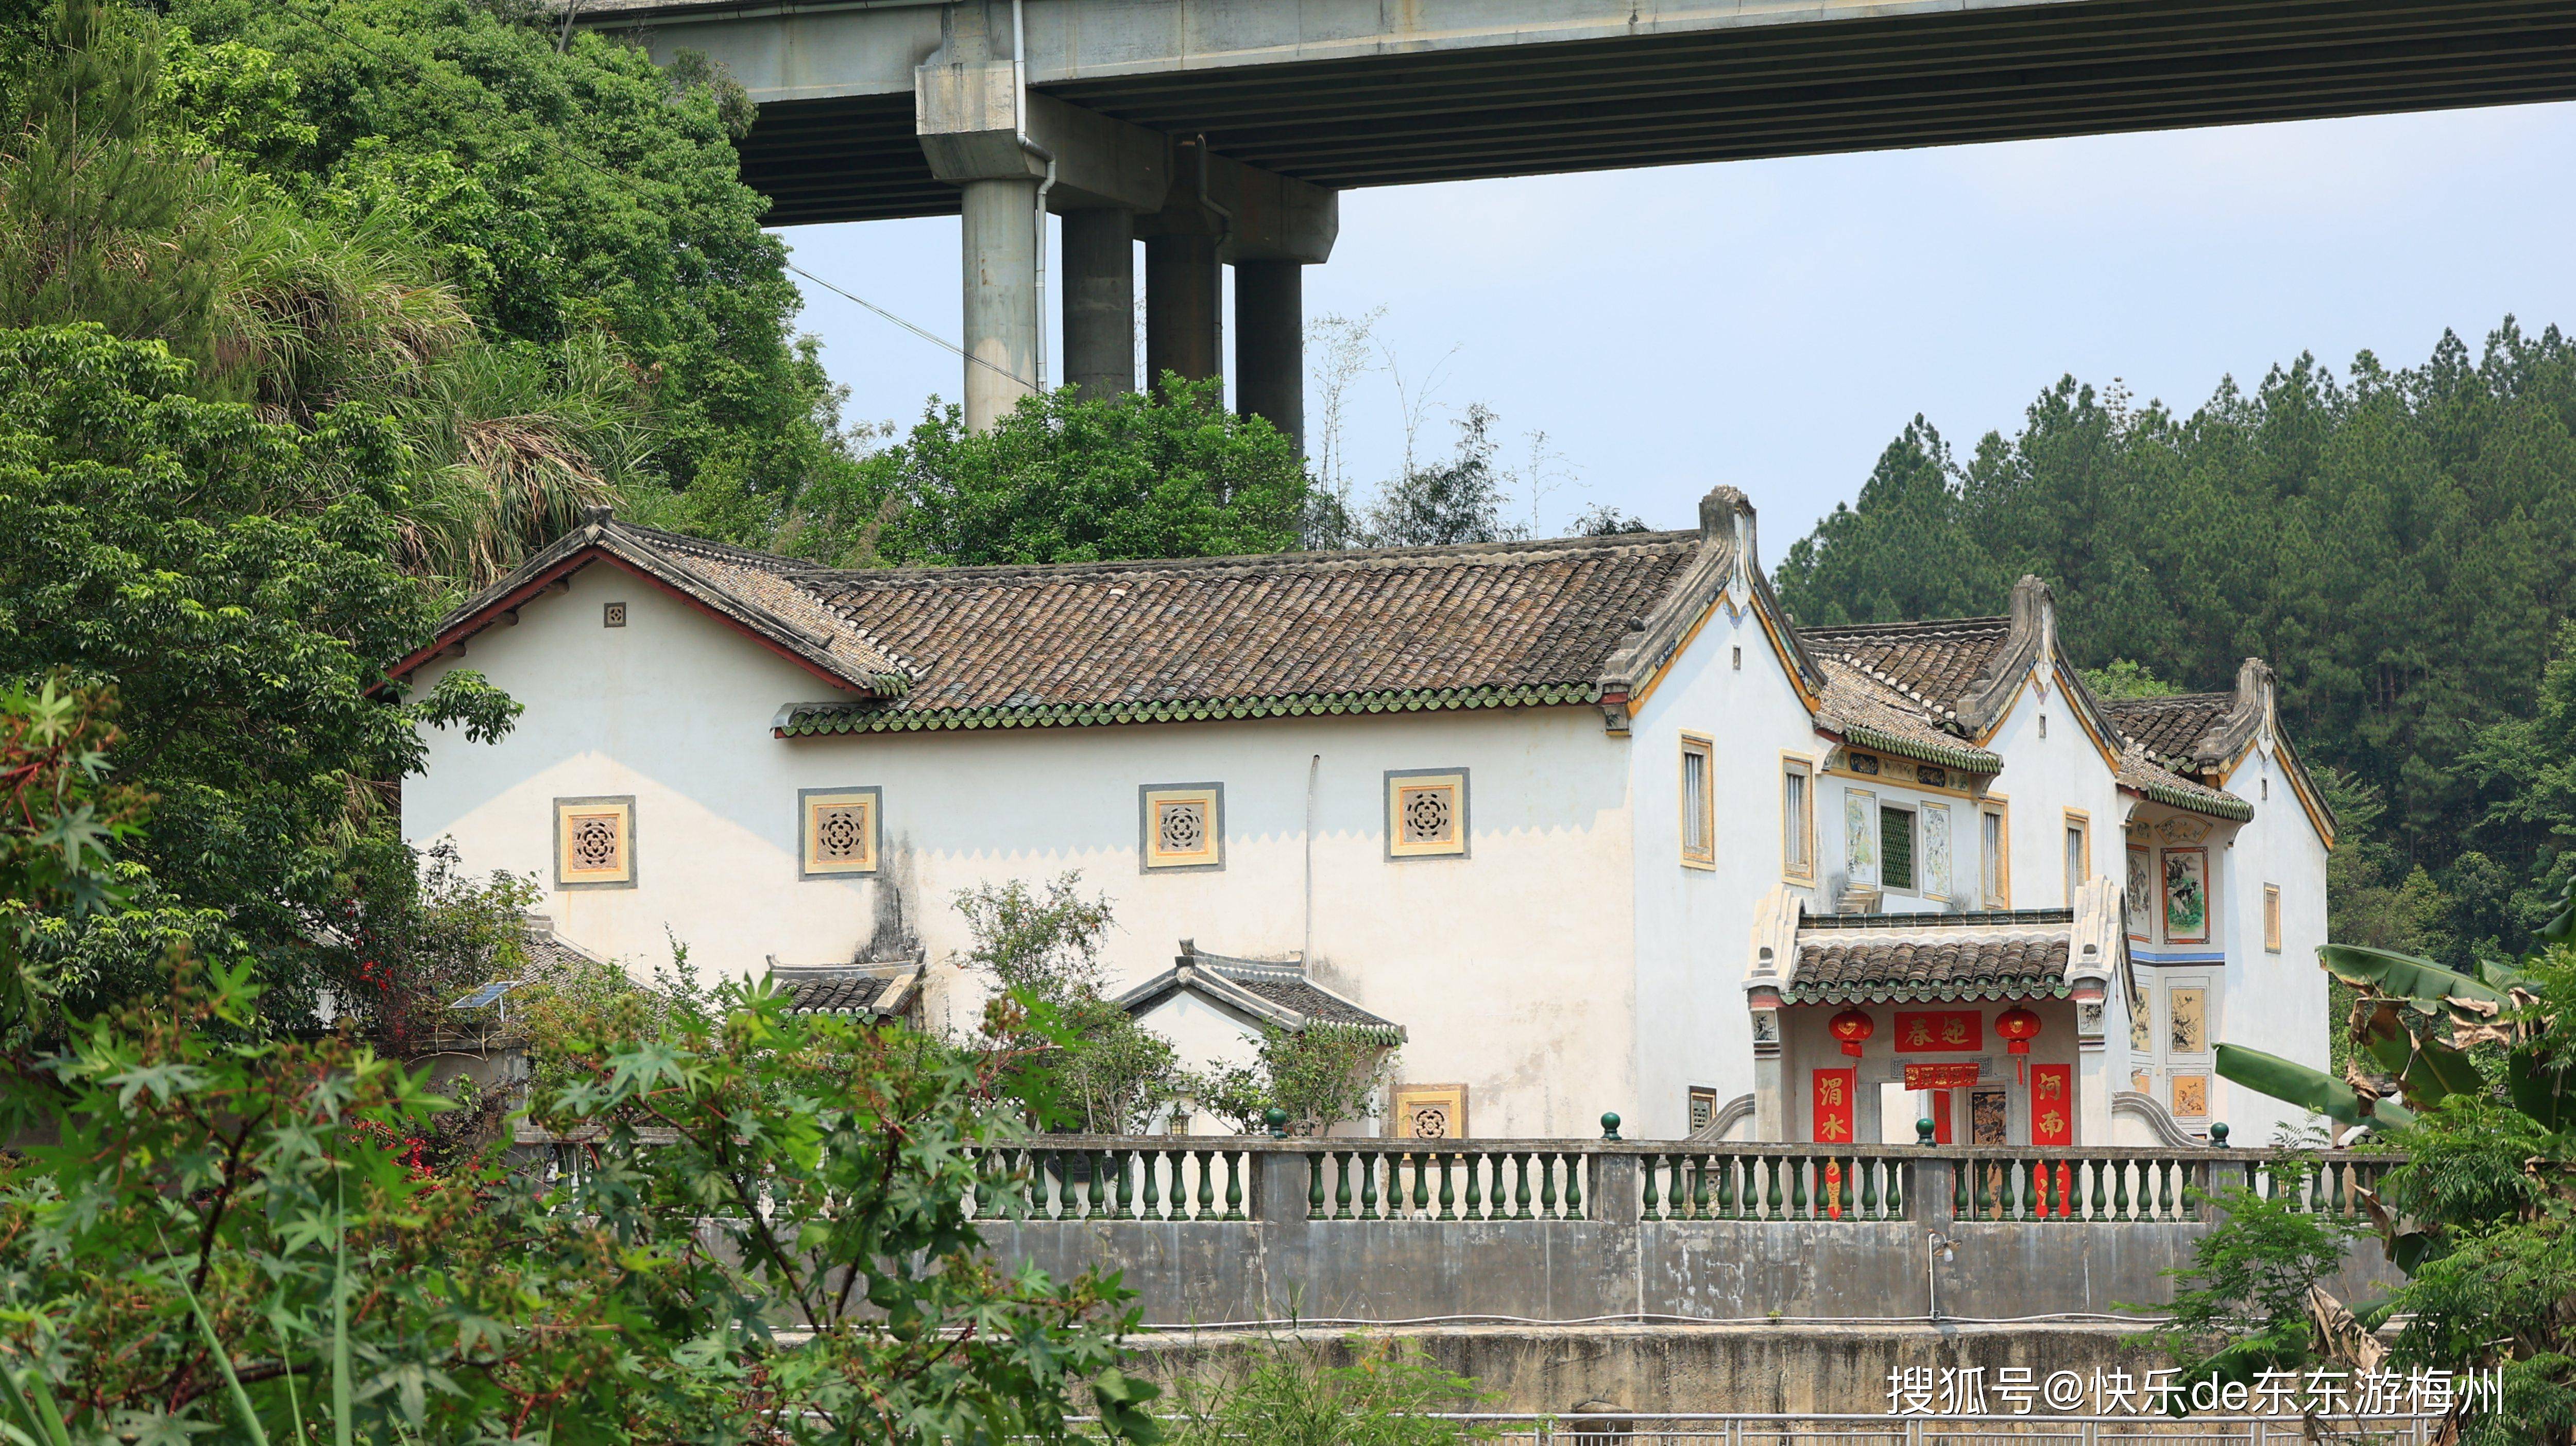 节假日到梅县丙村雷公坑河畔看美景,欣赏怡承楼和棣华楼等客家特色民居